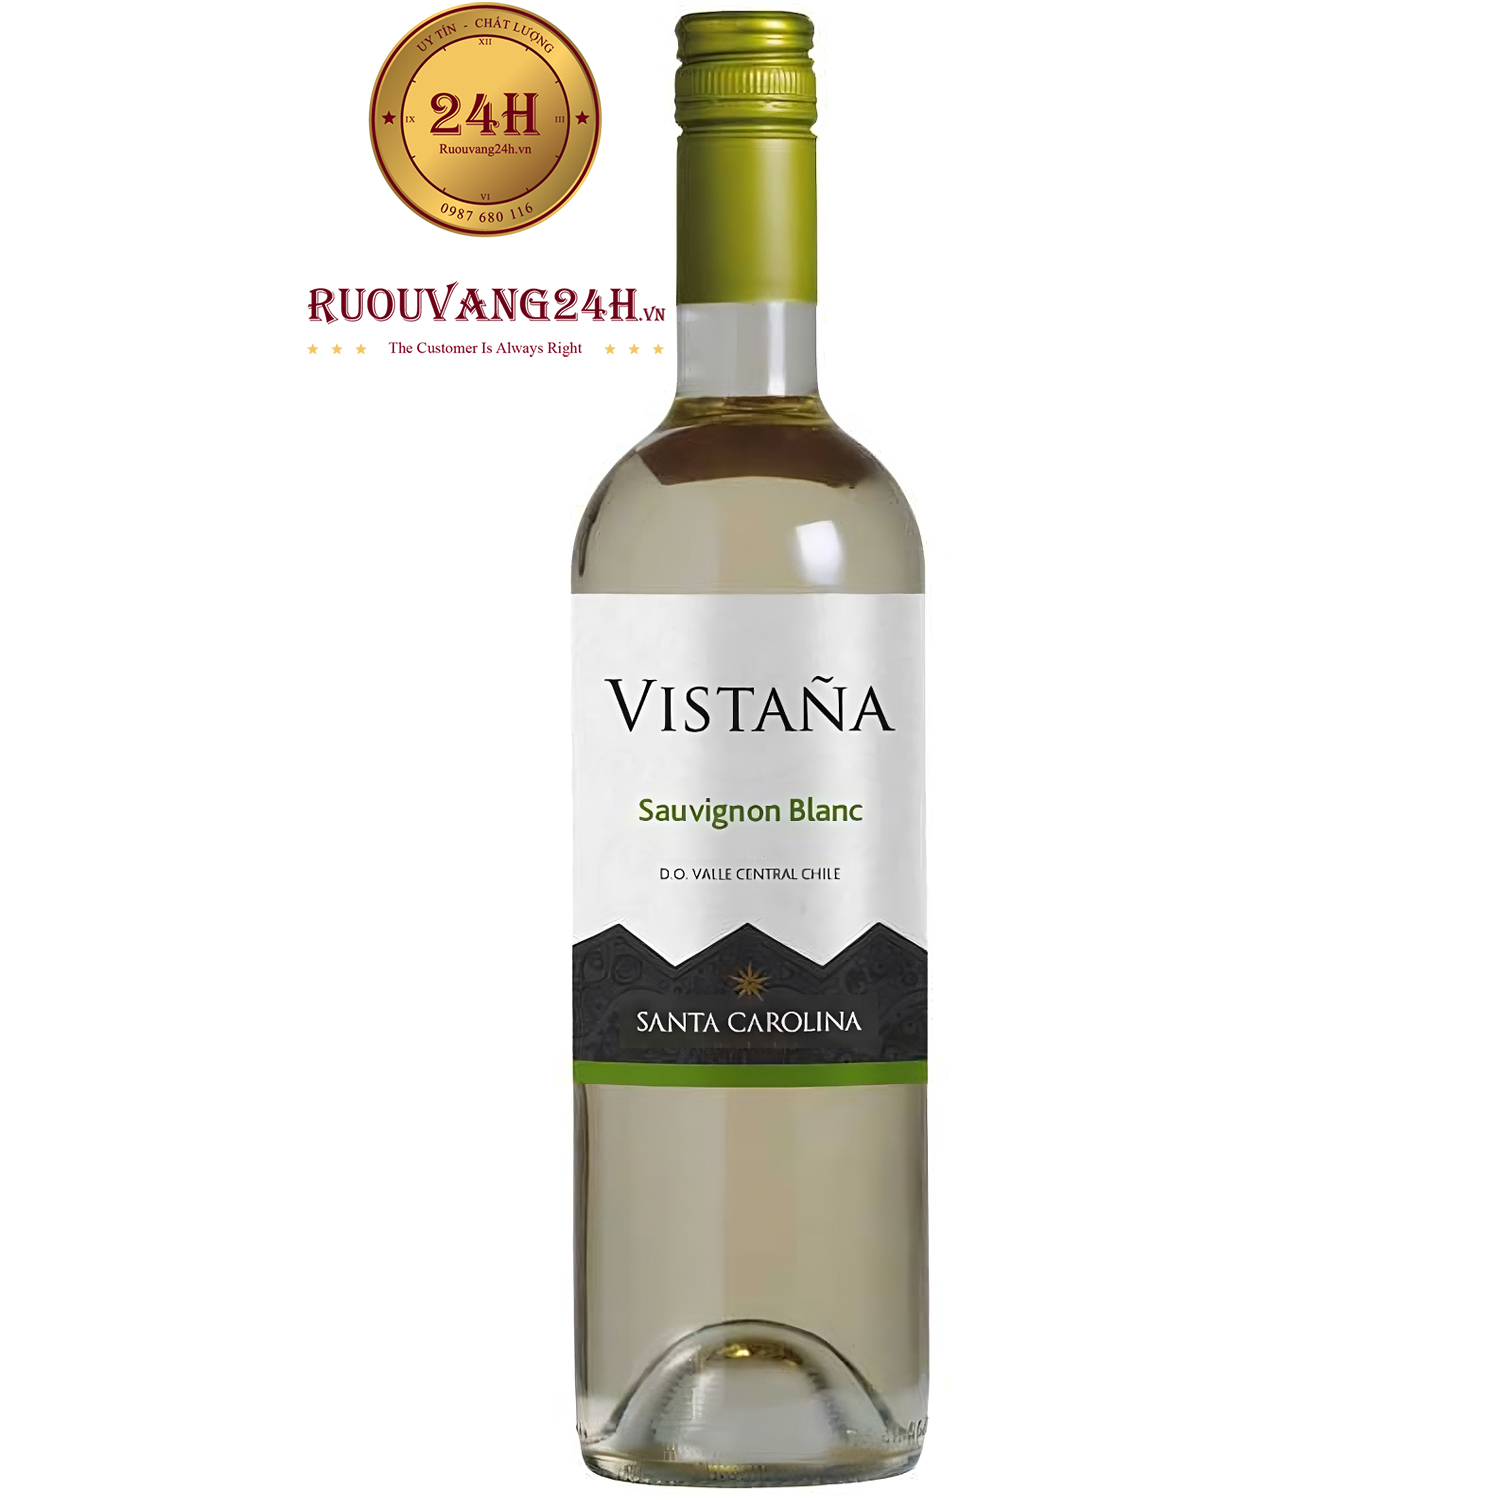 Rượu Vang Santa Carolina Vistana Sauvignon Blanc